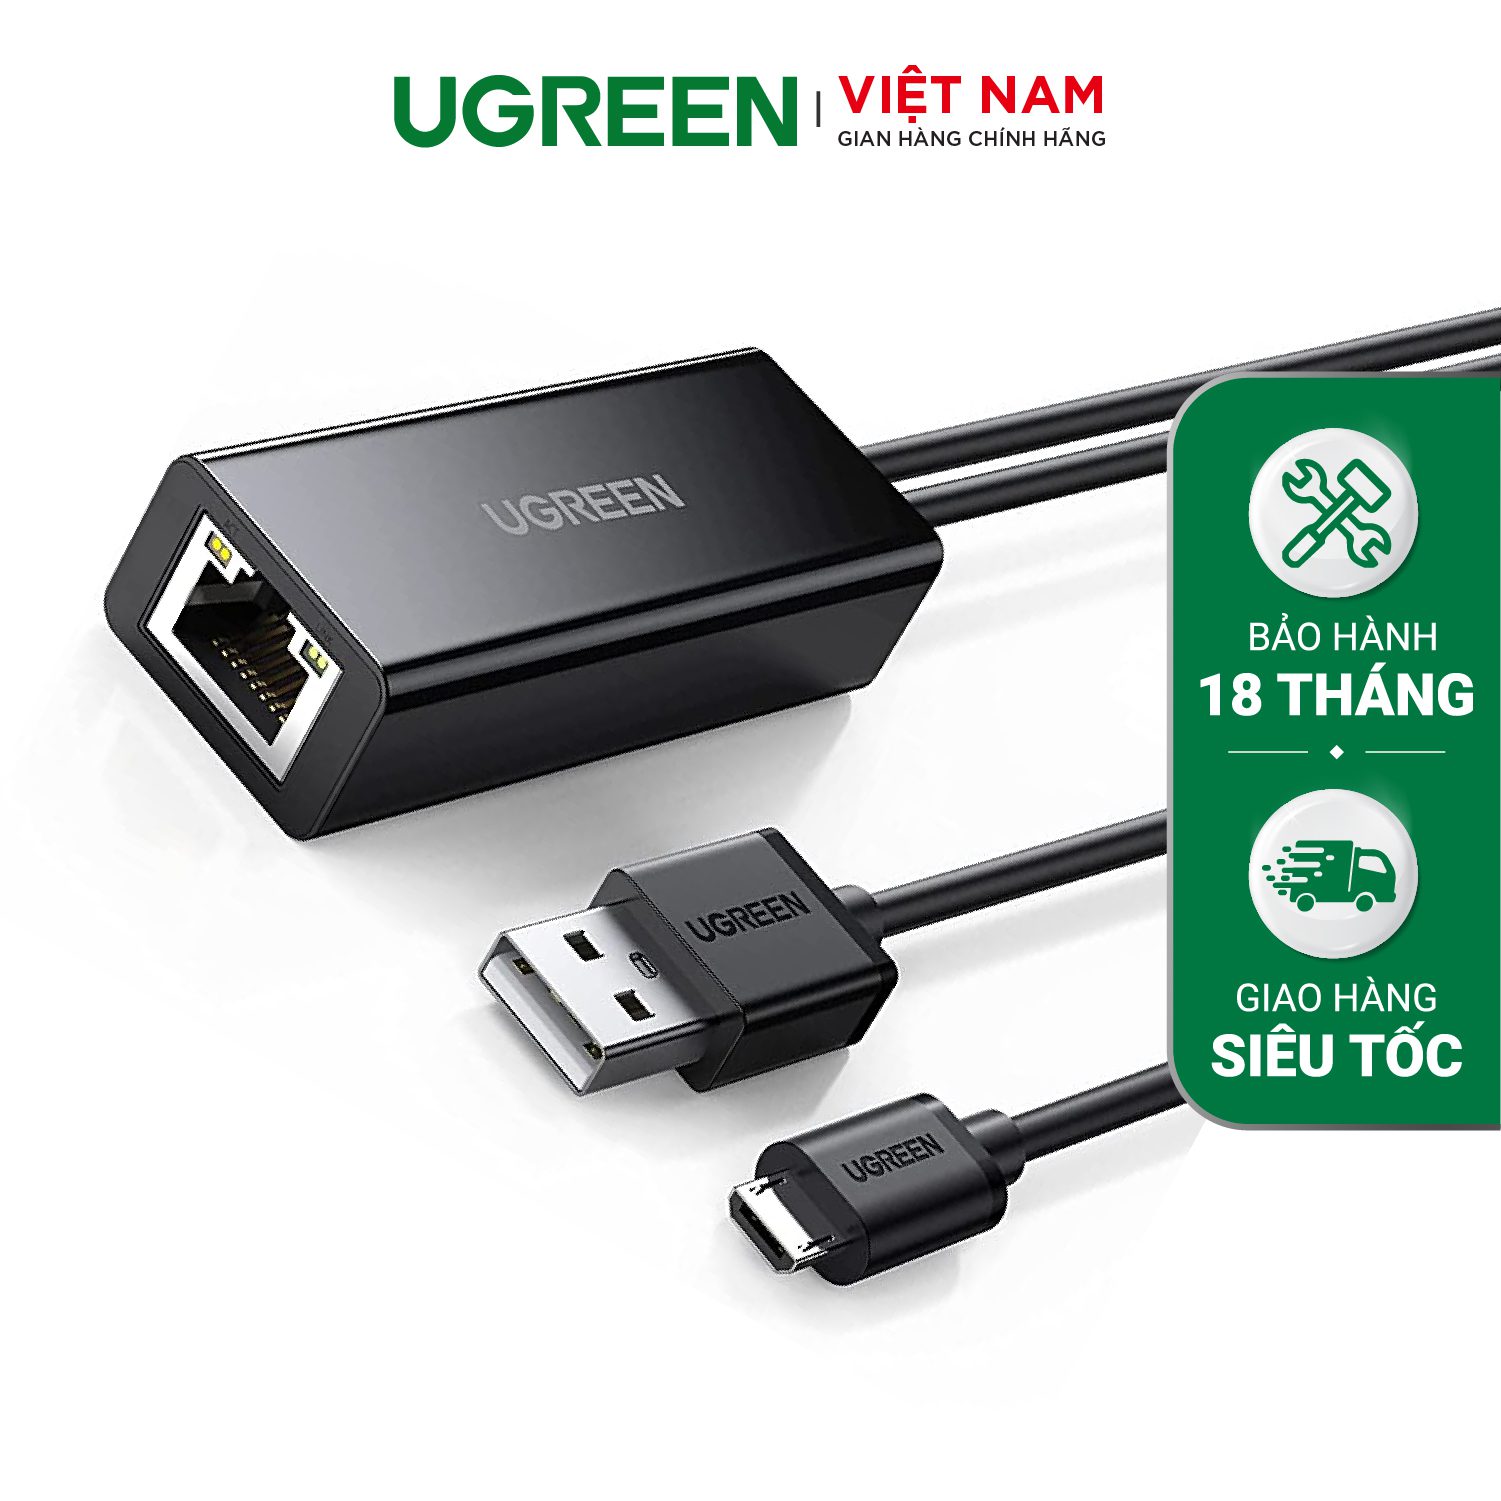 Bộ chuyển đổi USB sang LAN UGREEN 30985 - Tích hợp cổng micro - Tốc độ truyền 100Mbps – Ugreen Việt Nam